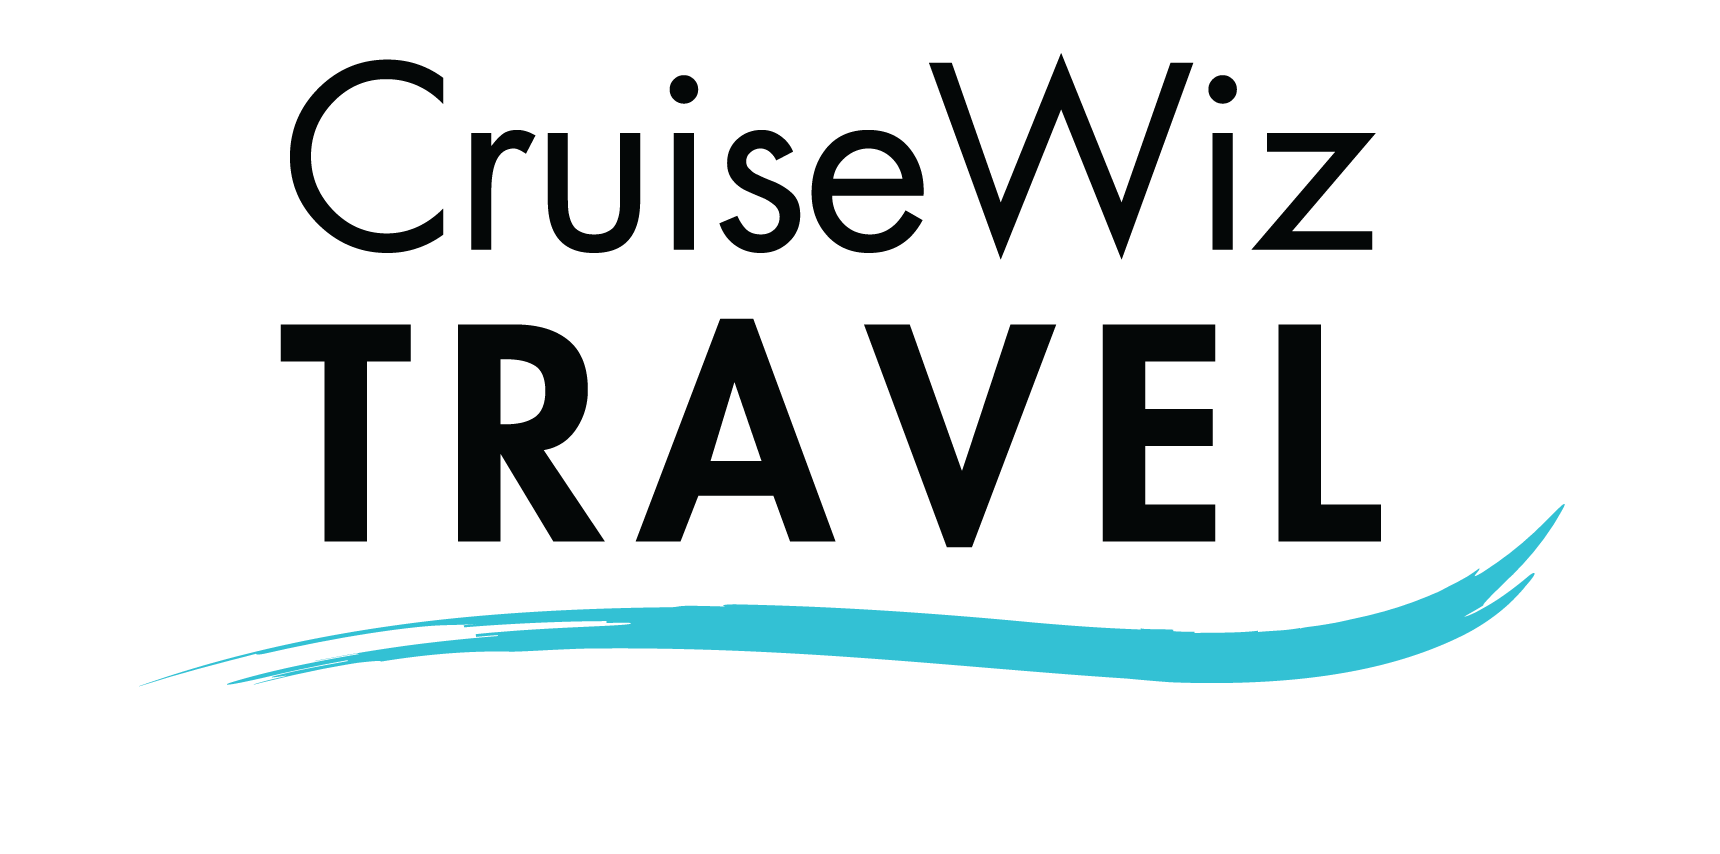 CruiseWiz Travel Logo - Click to go Home